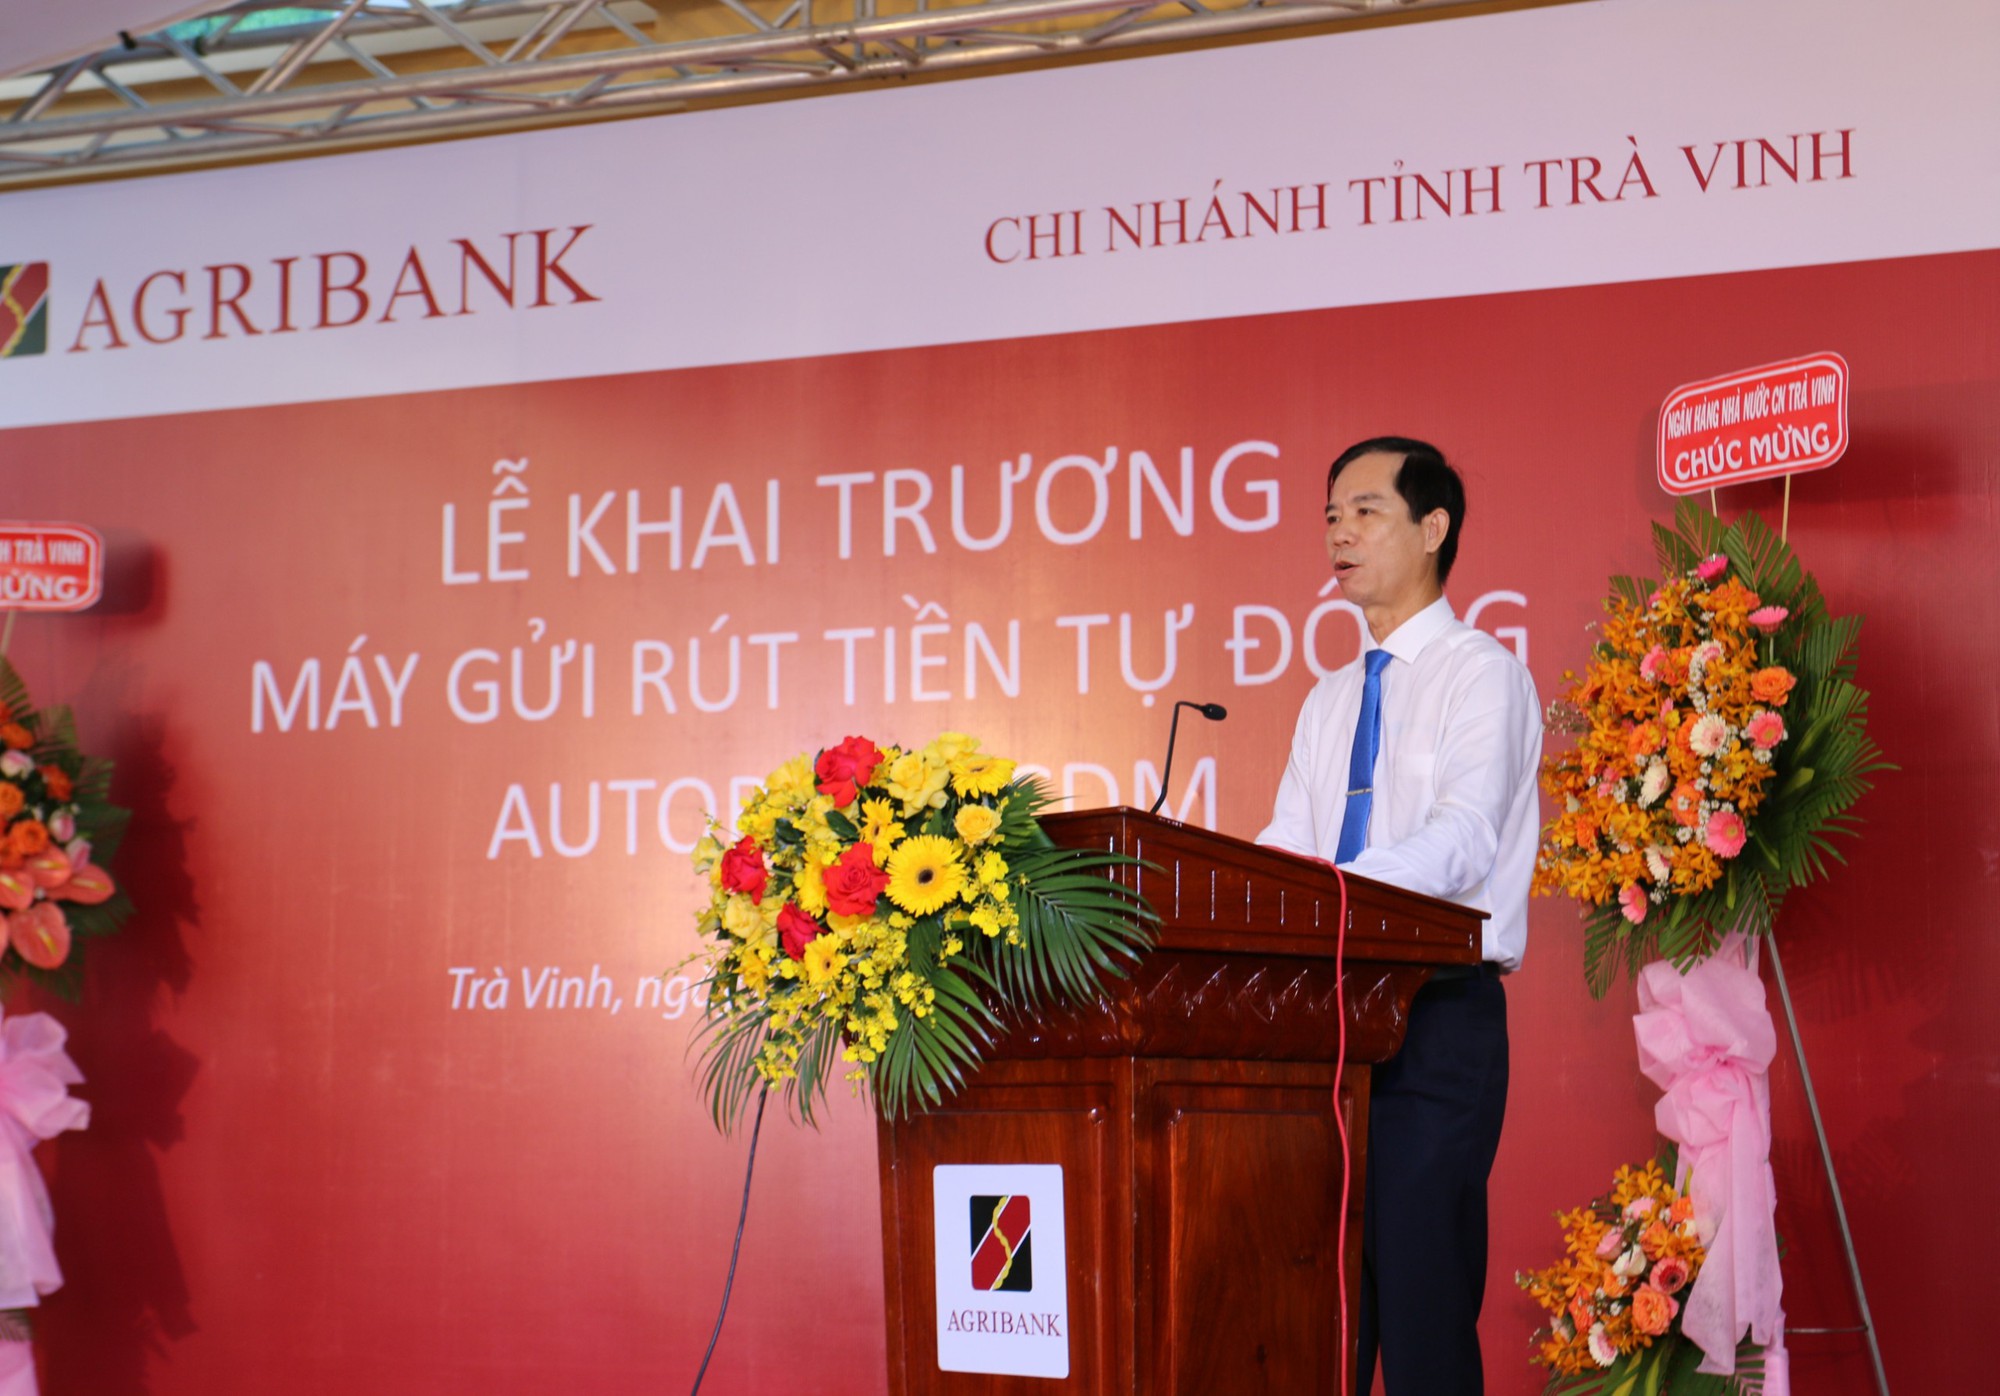 Agribank chi nhánh tỉnh Trà Vinh đưa vào hoạt động máy gửi, rút tiền tự động  - Ảnh 5.